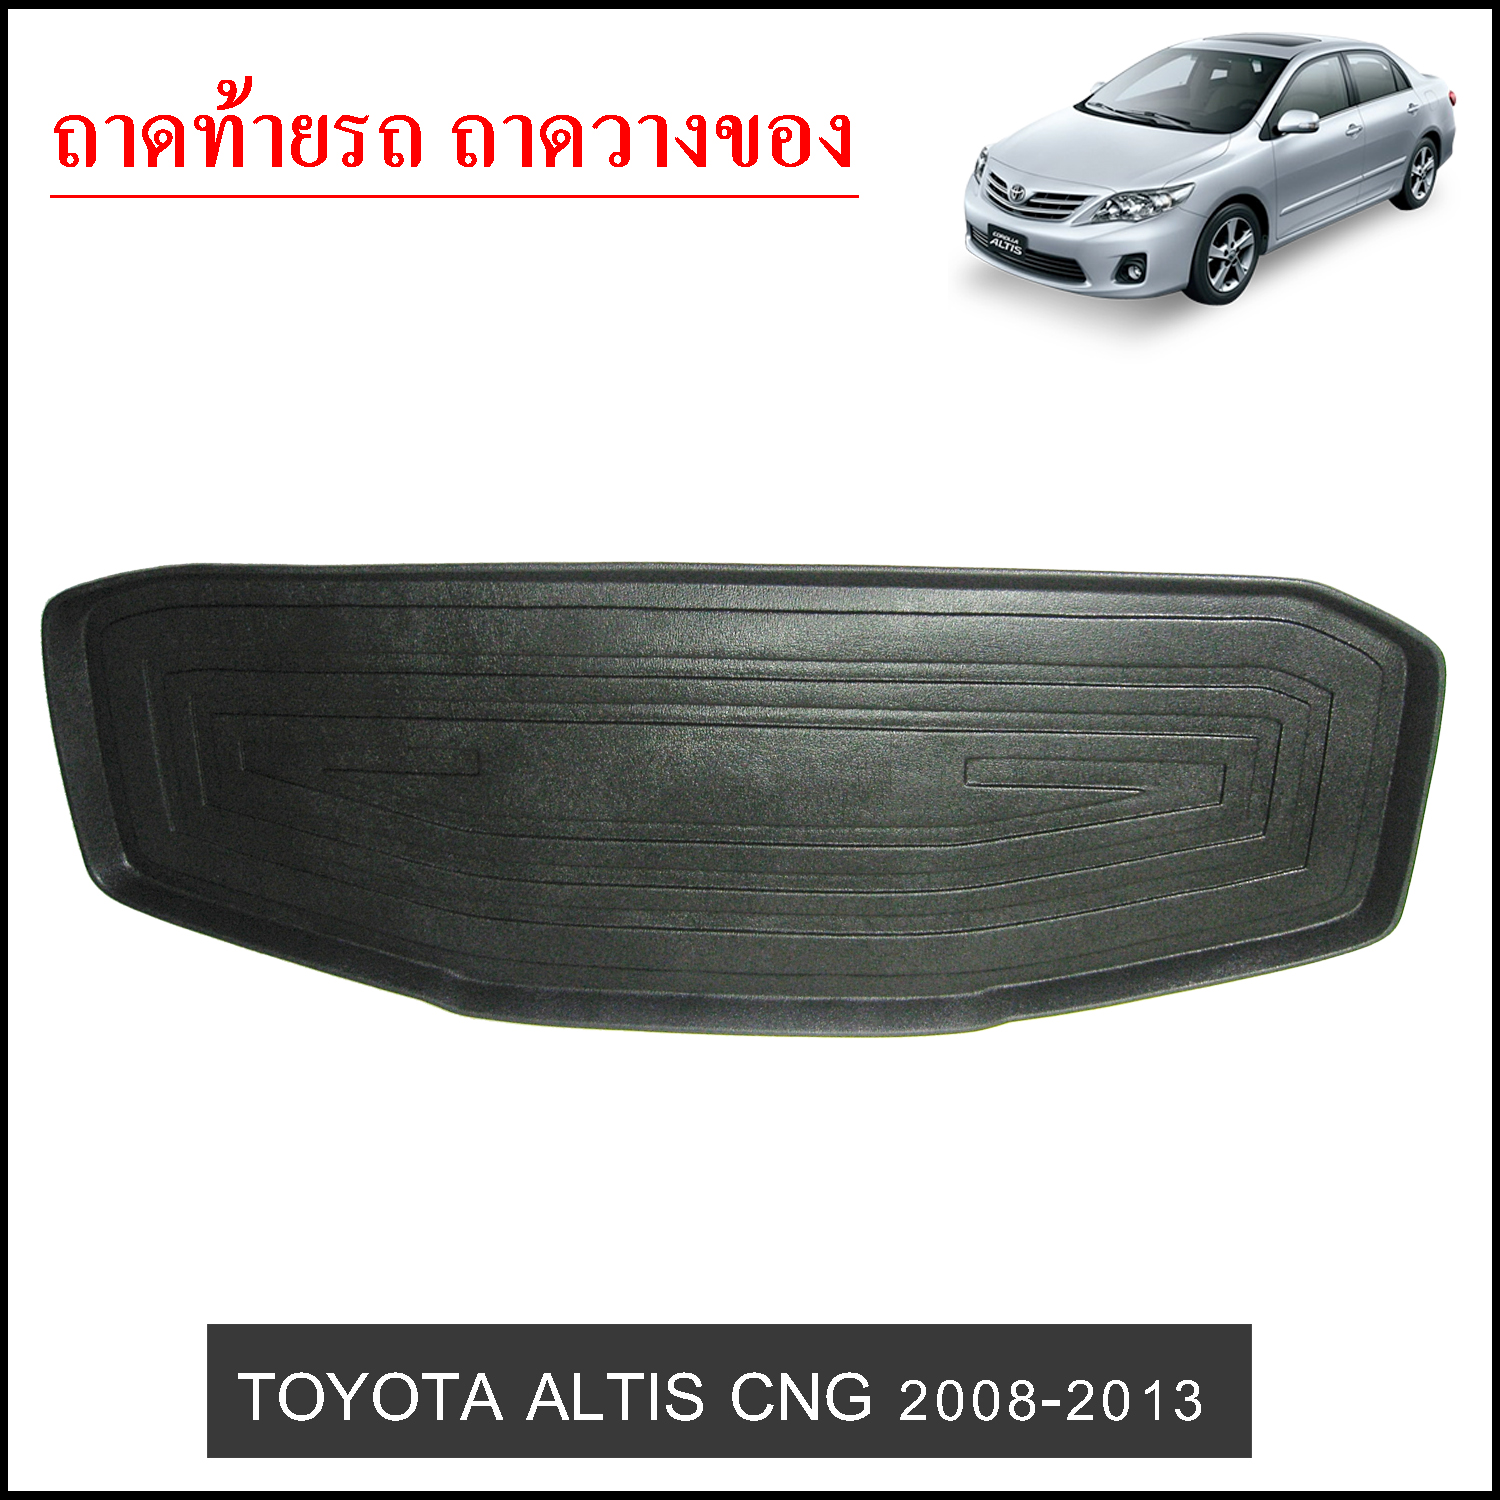 Toyota Altis 2008-2013 CNG